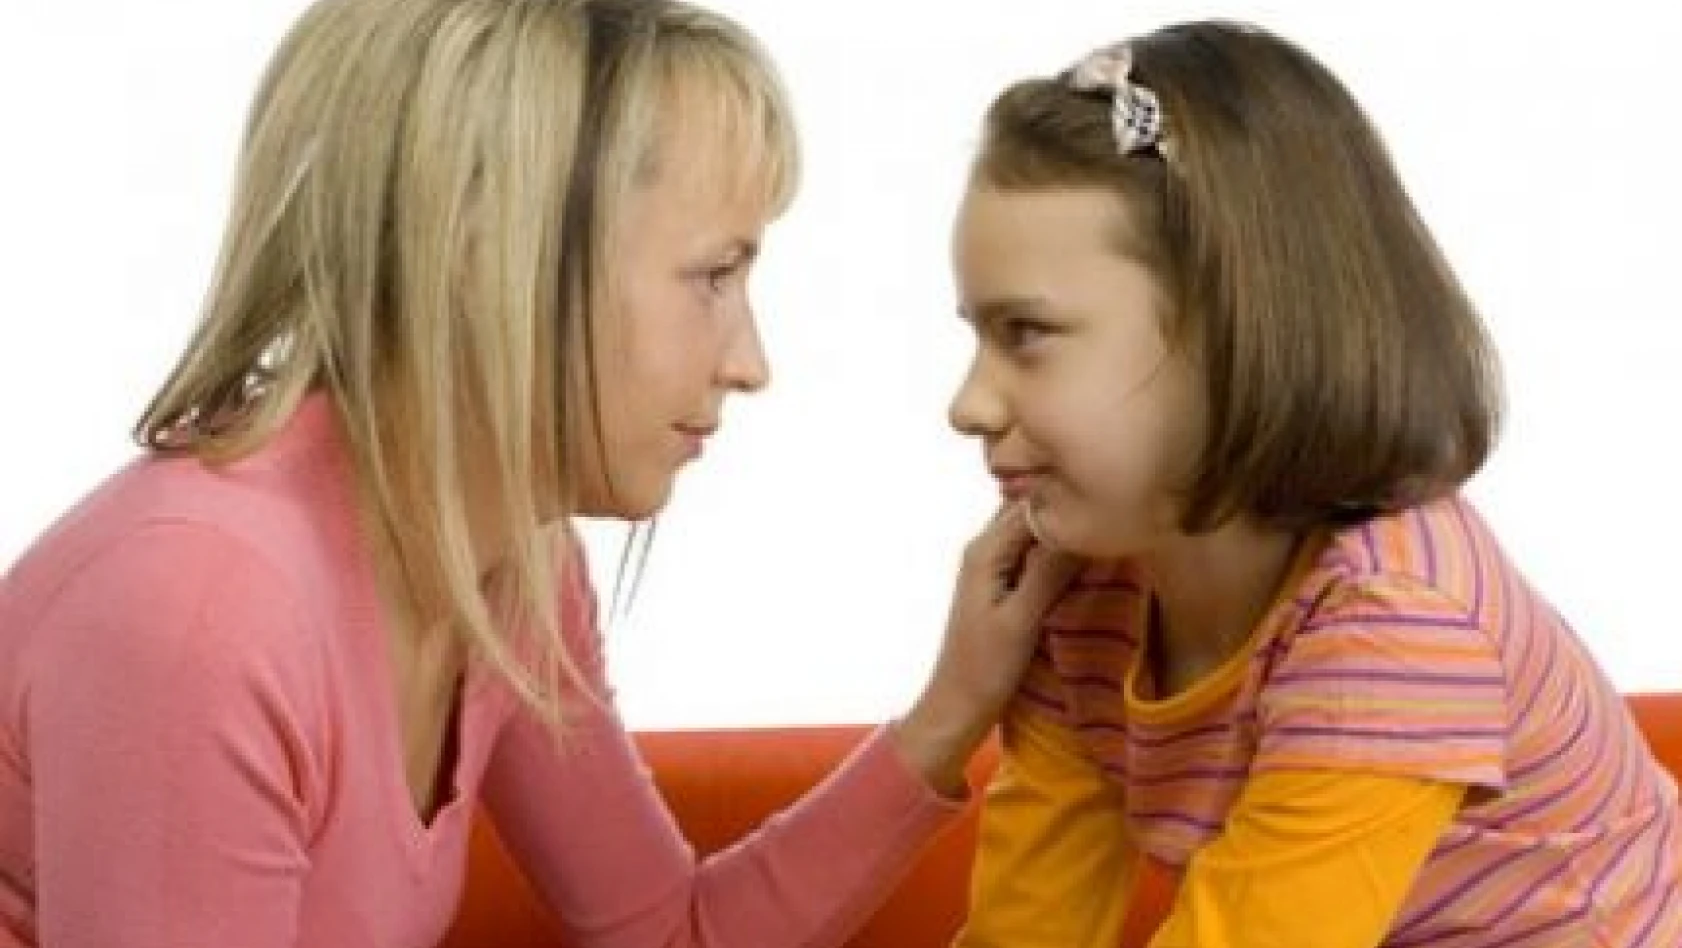 Annelere 'çocuklarınıza karşı aşırı korumacı olmayın' uyarısı